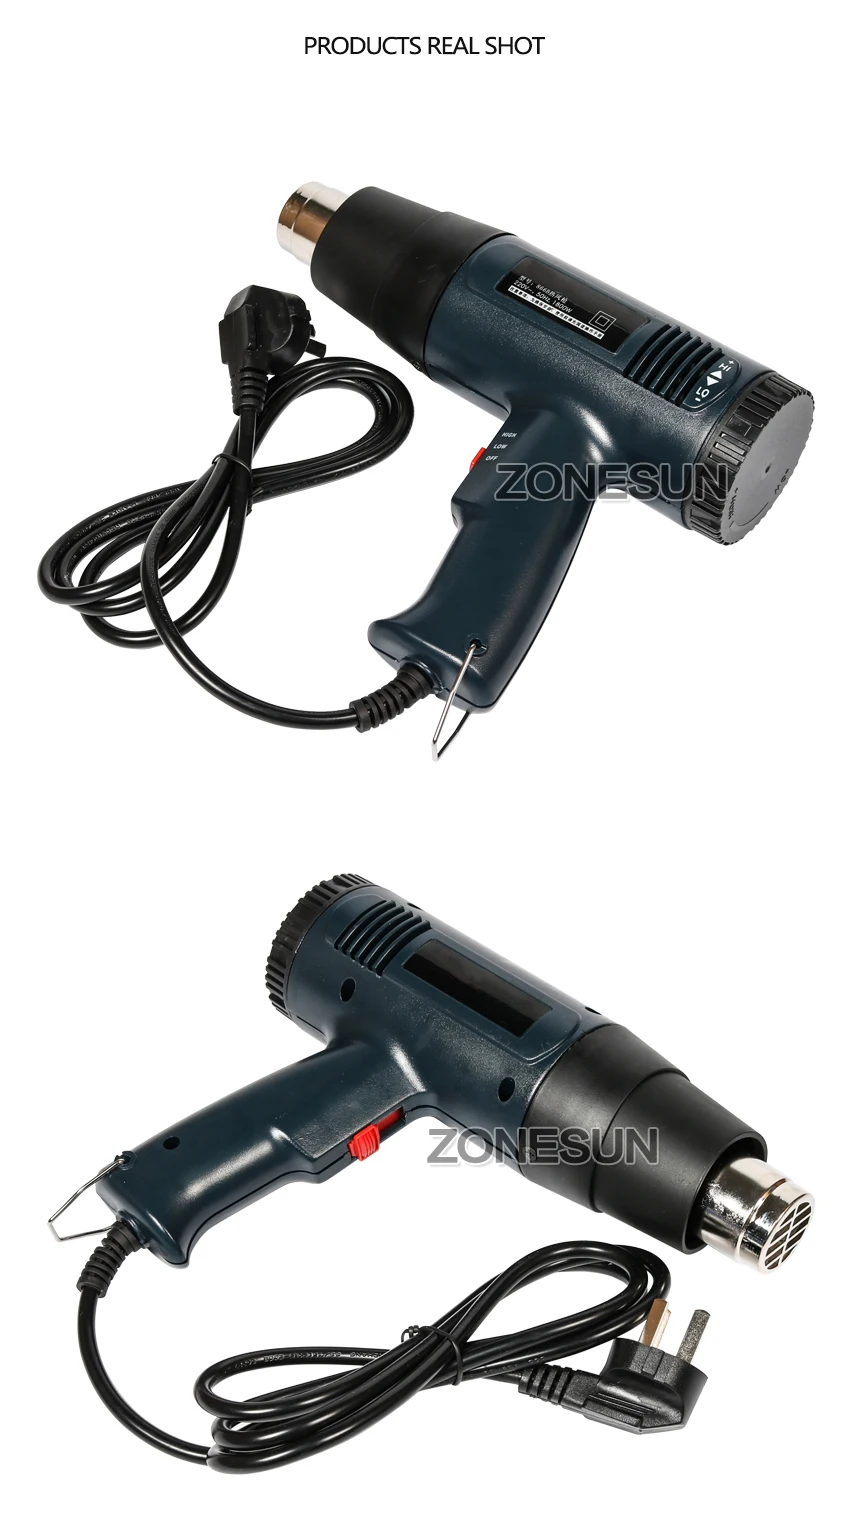 ZONESUN 1600 Вт Цифровой нагревательный пистолет ремонтный инструмент температура регулируемая температура